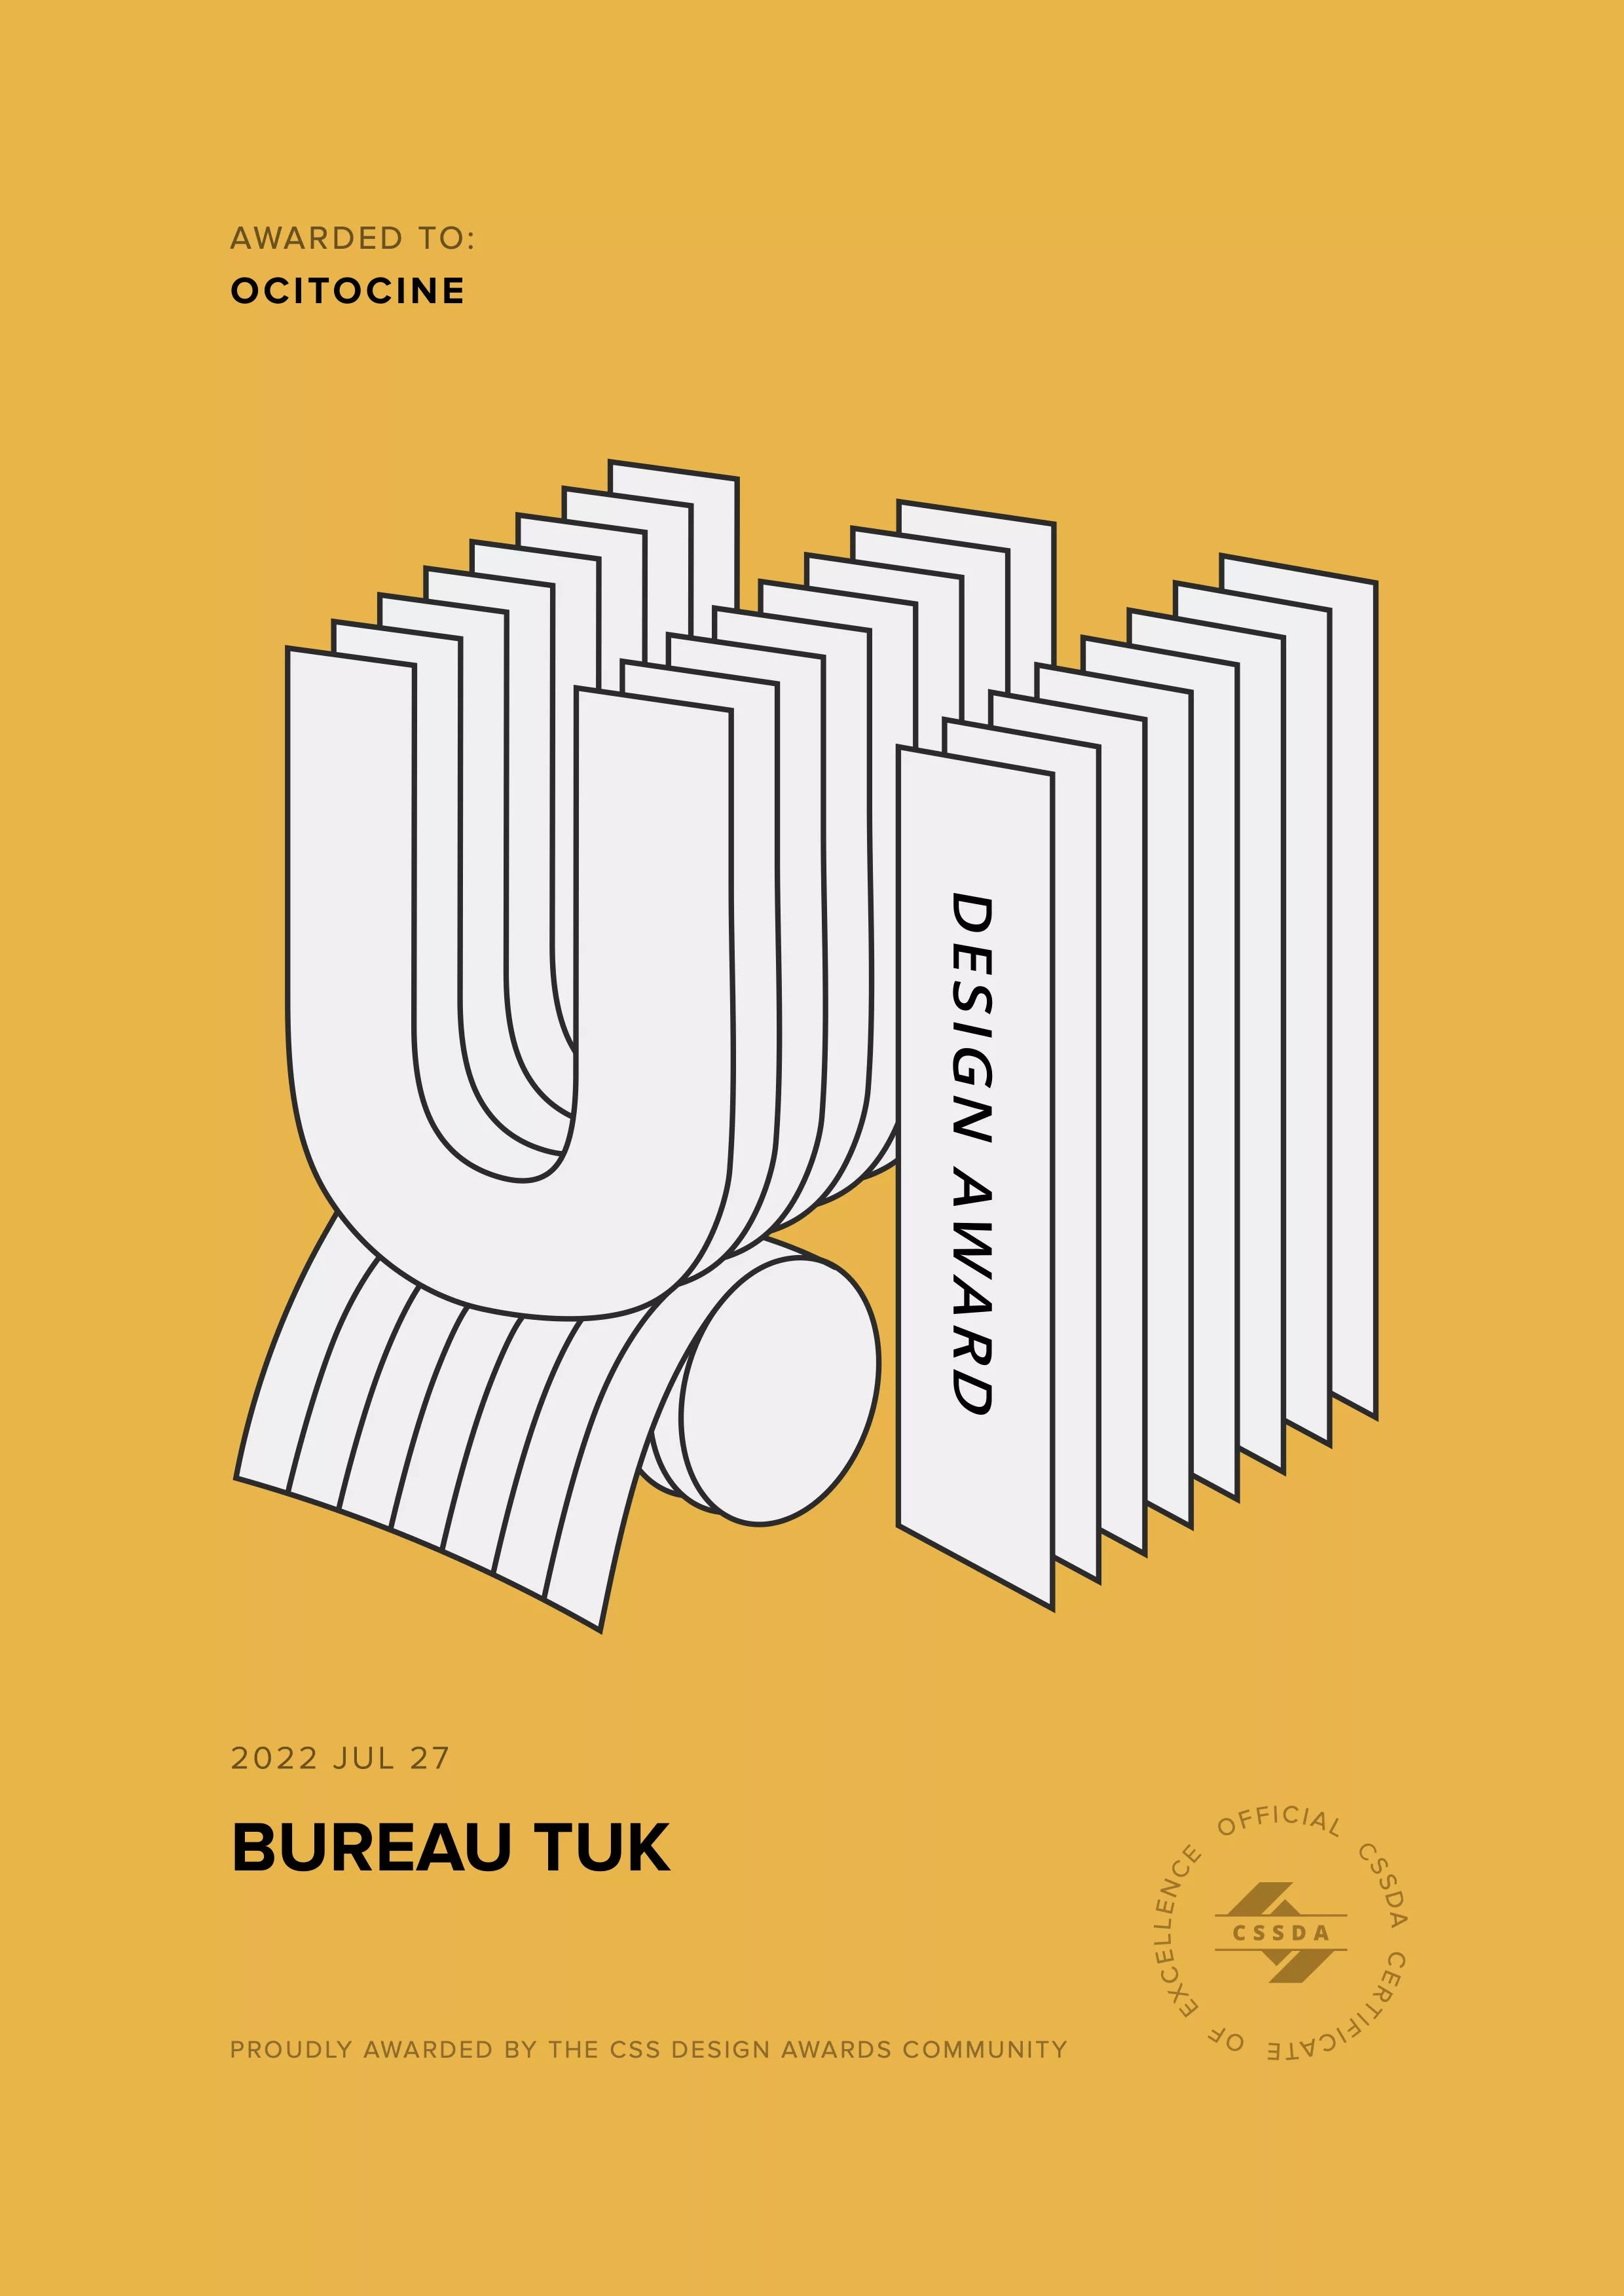 Ocitocine, agence créative web et branding, a remporté un prix "CSSDA UI Design Award" pour la réalisation du site web bureautuk.ch